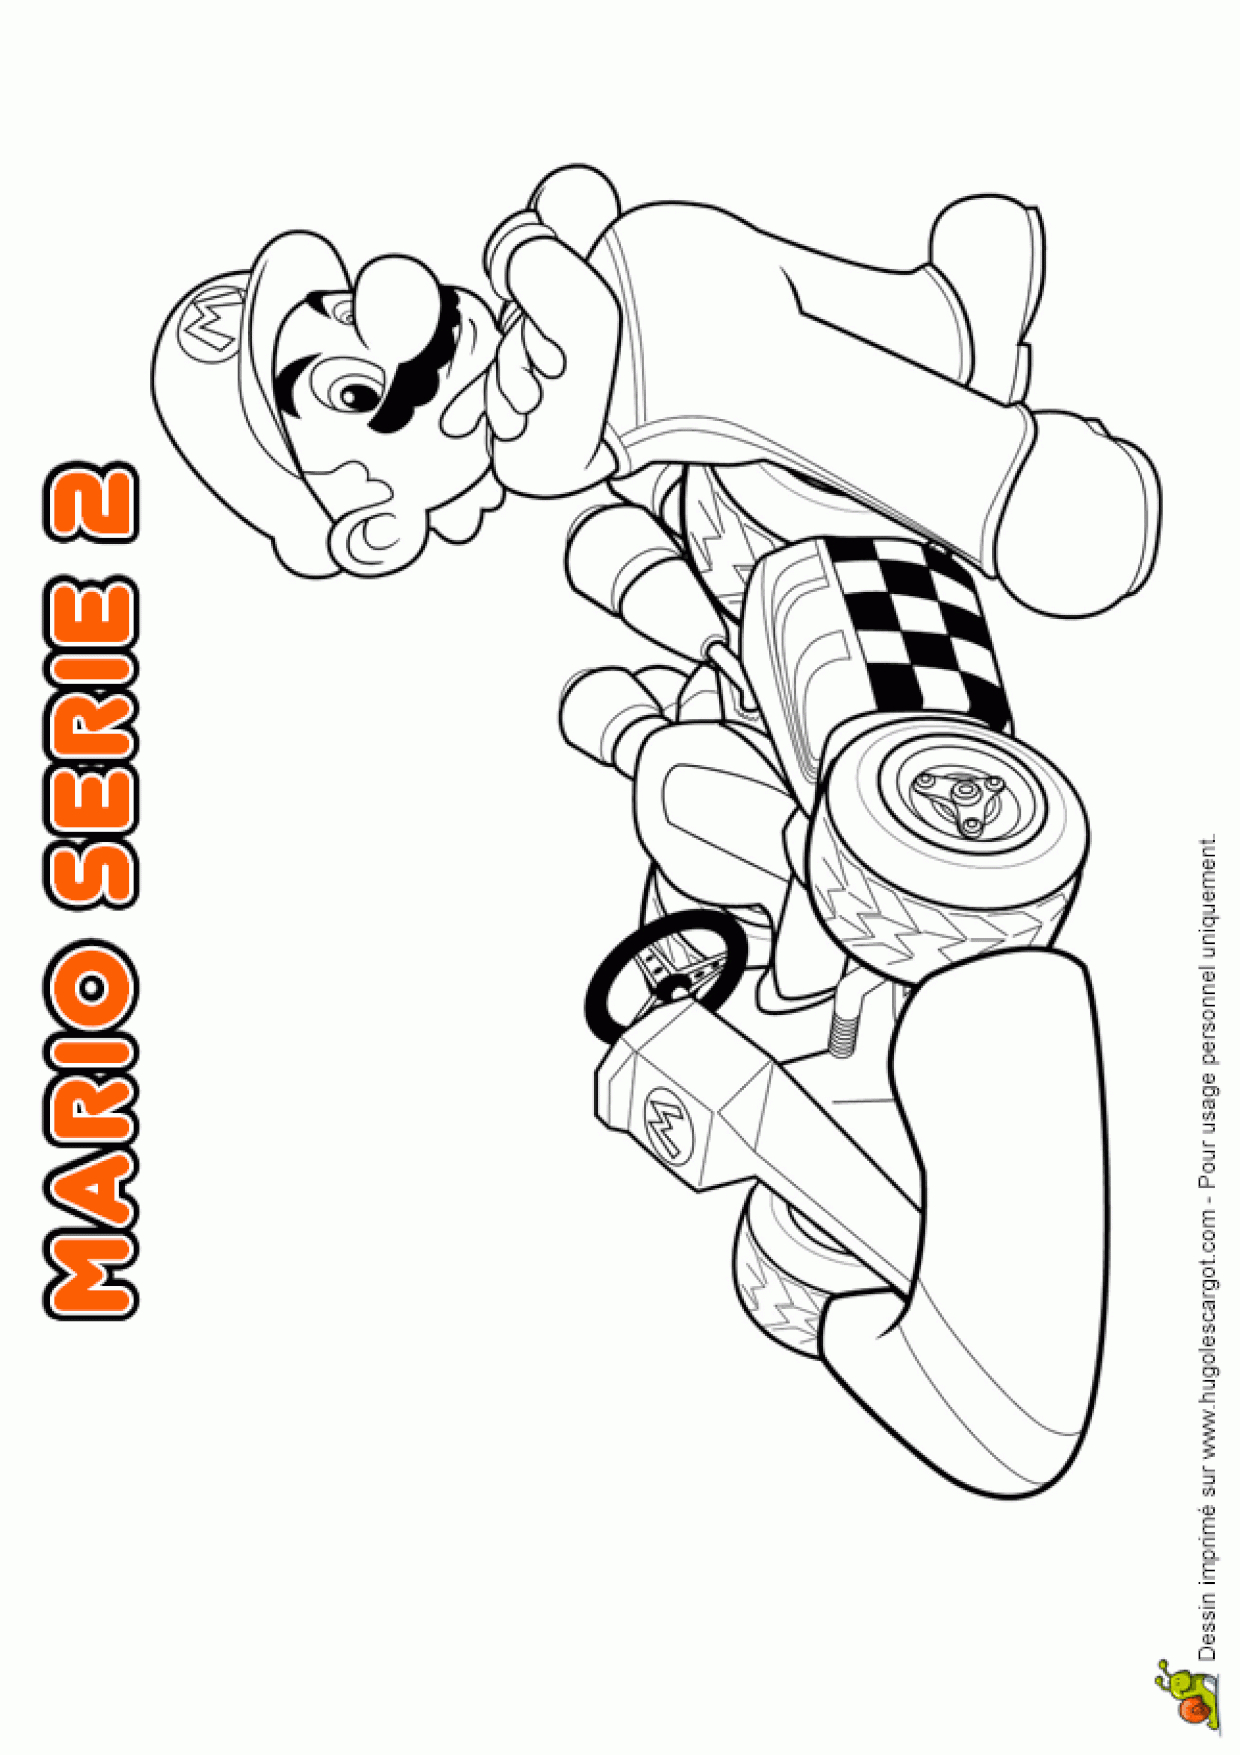 Coloriage Garcon Mario intérieur Coloriage Mario Kart 7